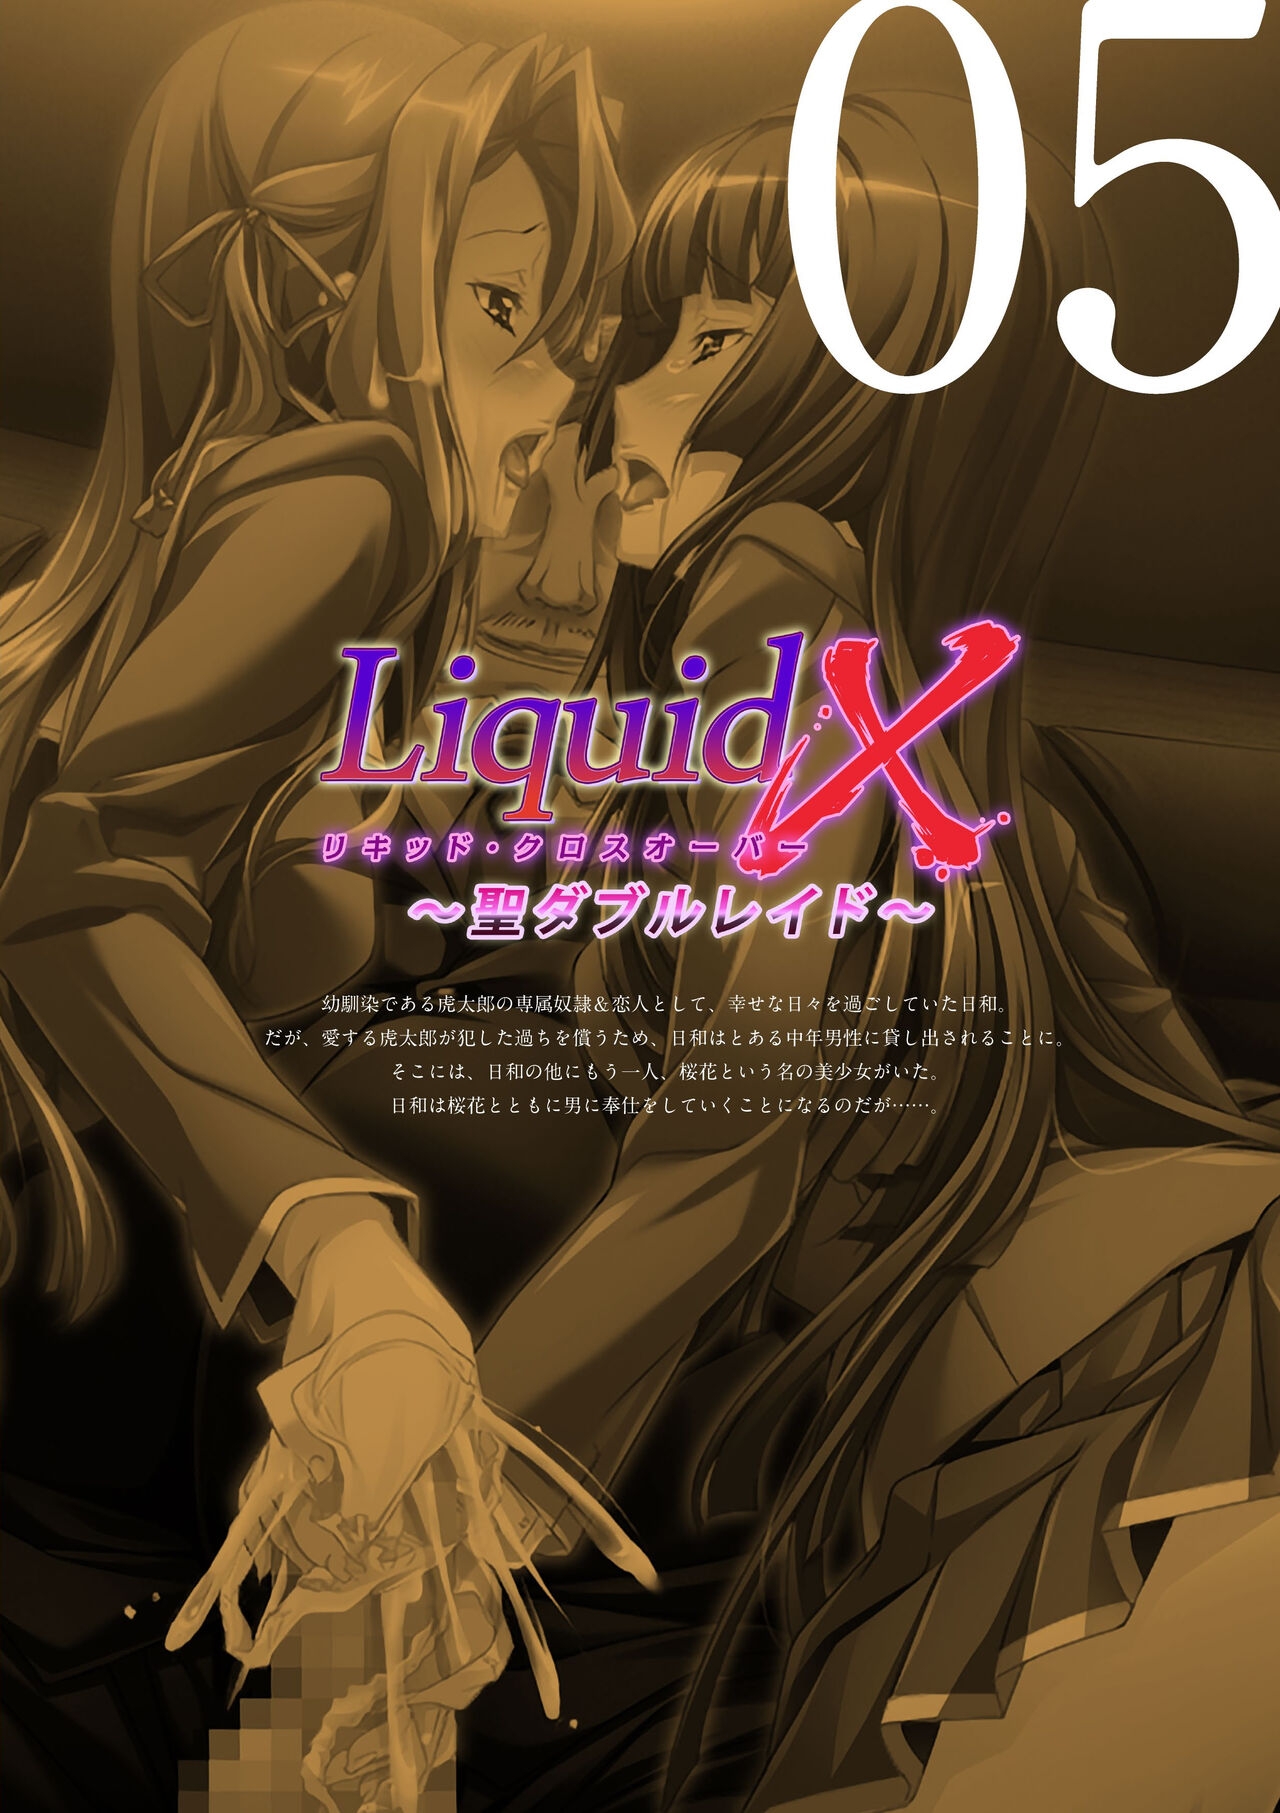 [Liquid] Sei Dorei Gakuensai Remaster Complete Box Digital Genga syu Seidorei Cyokyo Kiroku 358